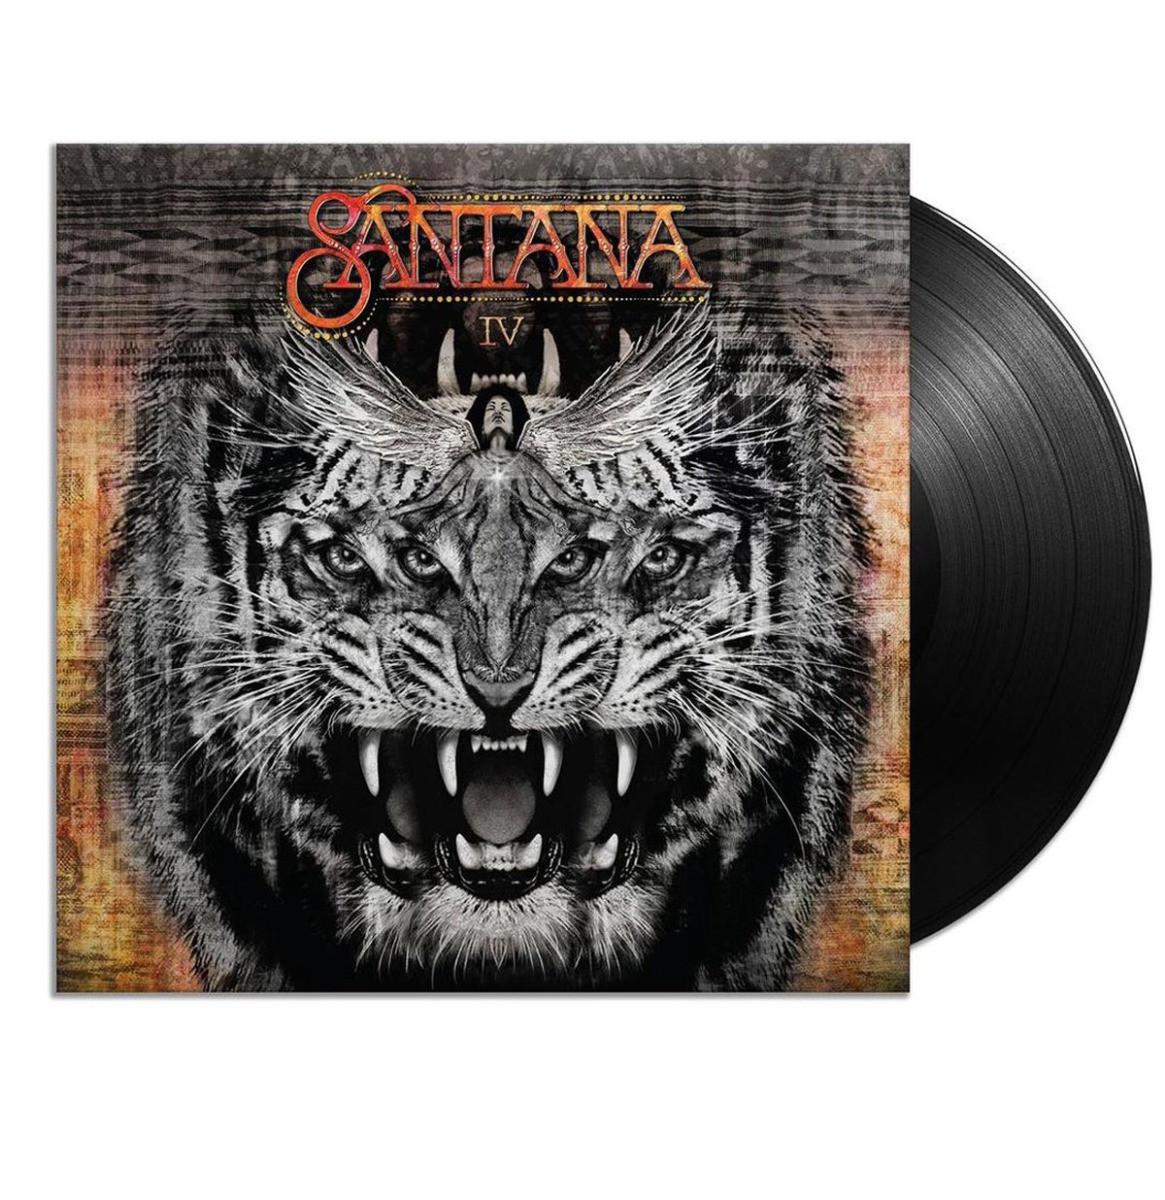 Santana - Santana IV 2LP